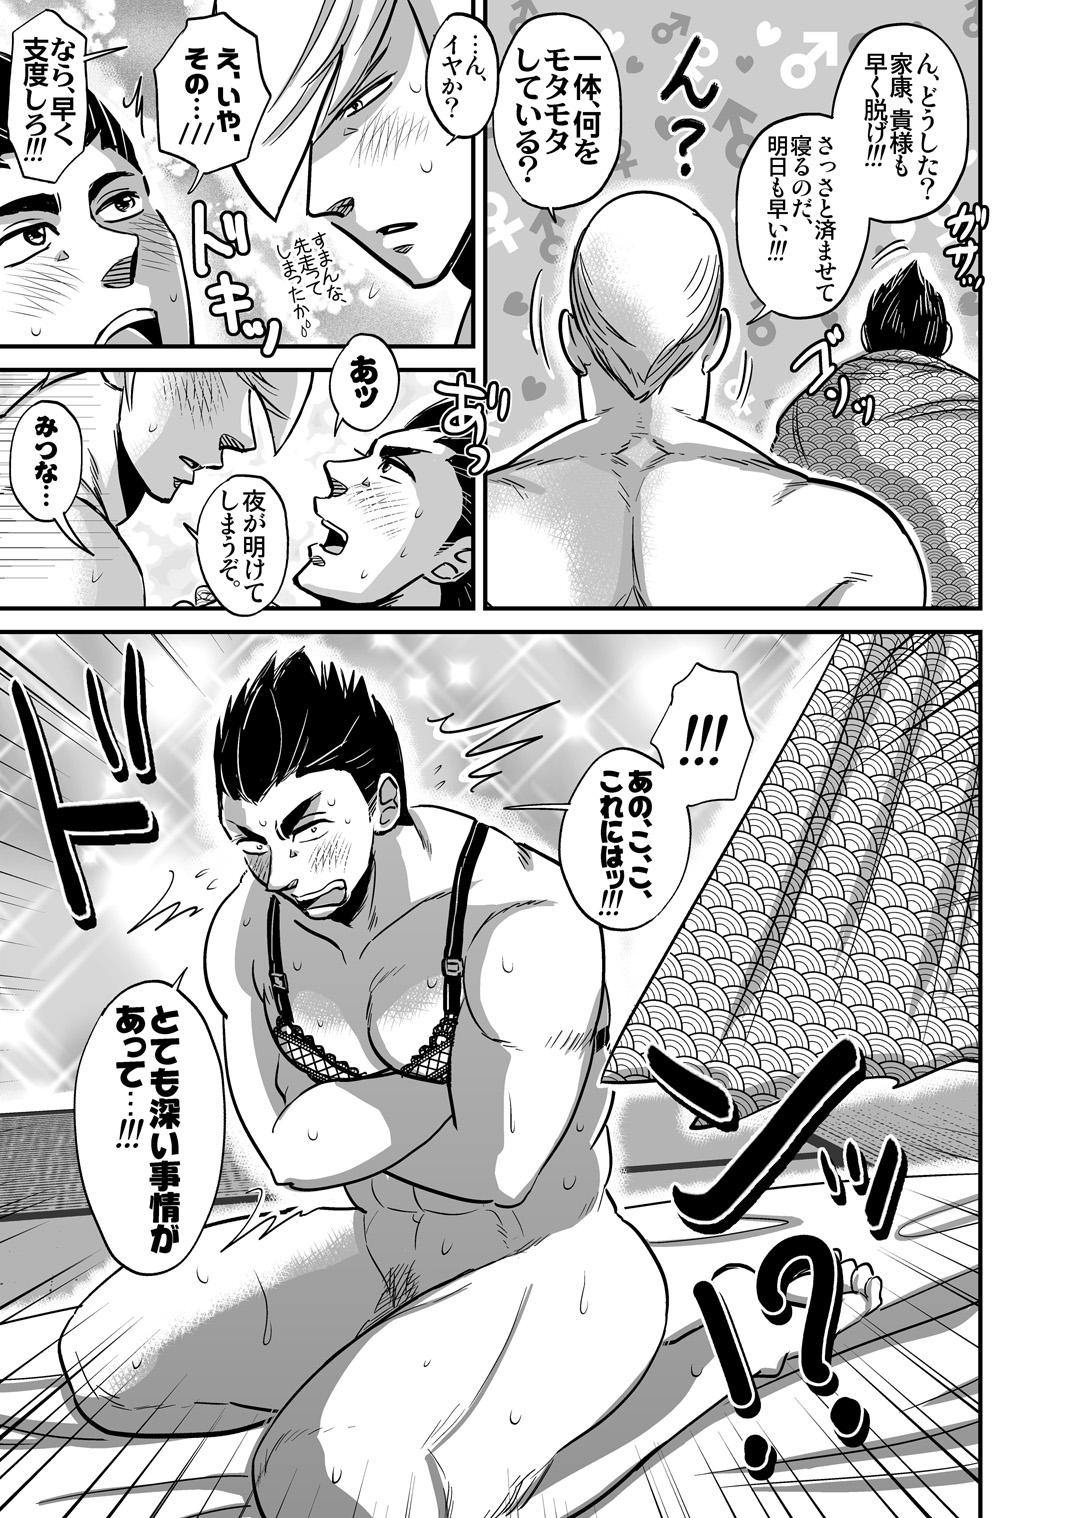 Fucking Hard Multi-HOMO manga at home - Sengoku basara Teenage - Page 6